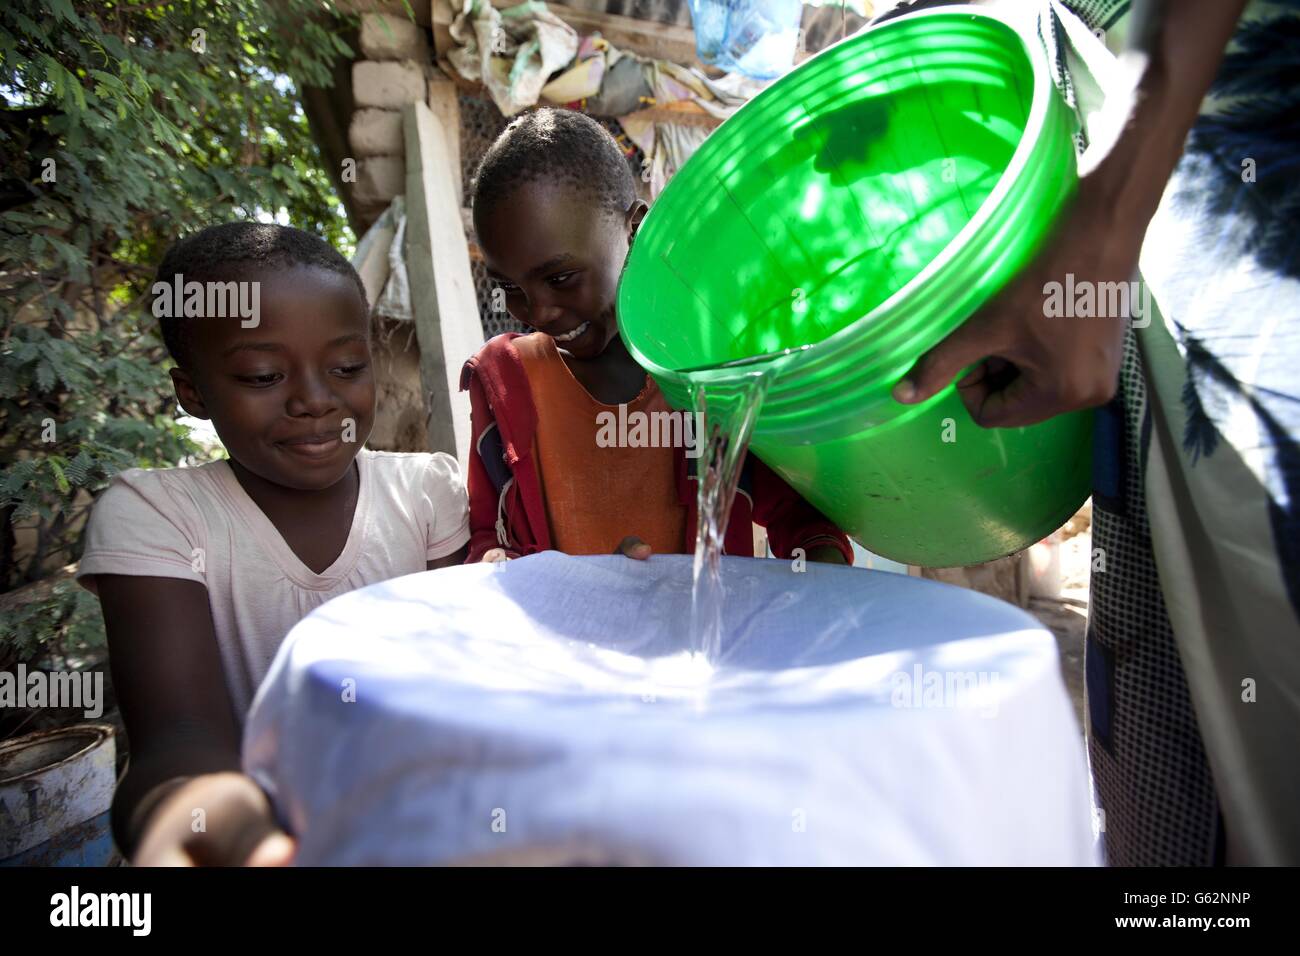 Kinder aus einem Dorf in Tansania, Afrika, mischen sich in einem Beutel mit Procter and Gamble's (P&G) Purifier of Water Purify Technologie, die von P&G Wissenschaftlern entwickelt wurde, um die Krise des sauberen Trinkwassers weltweit zu bekämpfen. P&G hat sich mit Asda für eine Kampagne für sauberes Wasser zusammengetan, die dazu beitragen soll, ein Leben pro Stunde durch ein 1-Pack = 1 Tag sauberes Trinkwasser-Programm zu retten. Stockfoto